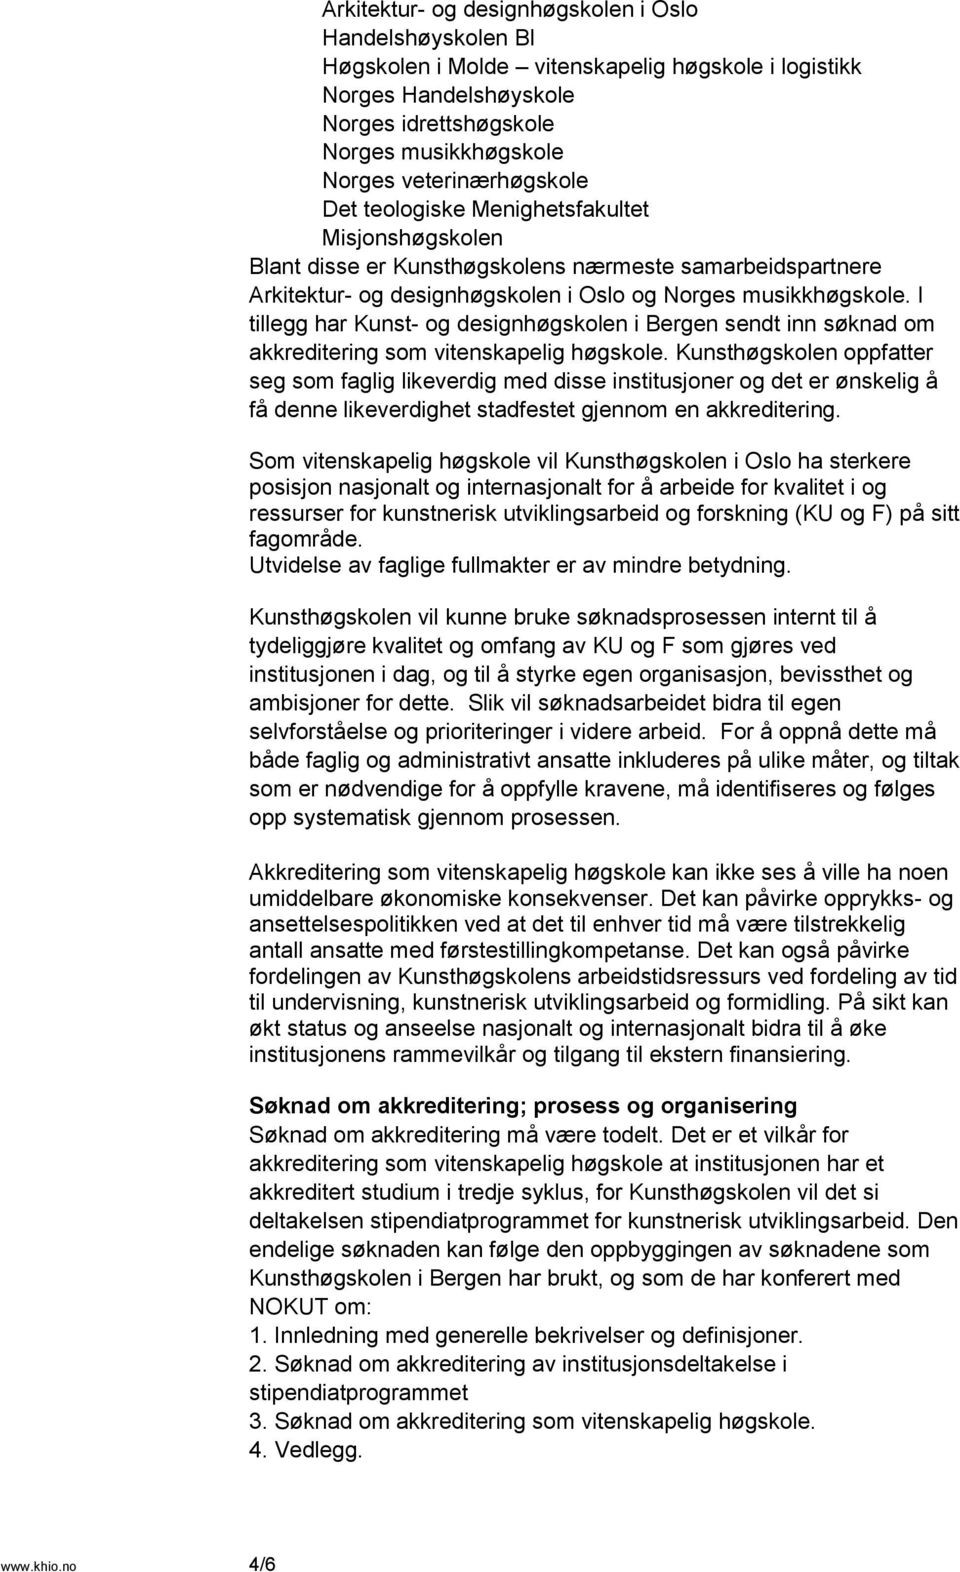 I tillegg har Kunst- og designhøgskolen i Bergen sendt inn søknad om akkreditering som vitenskapelig høgskole.